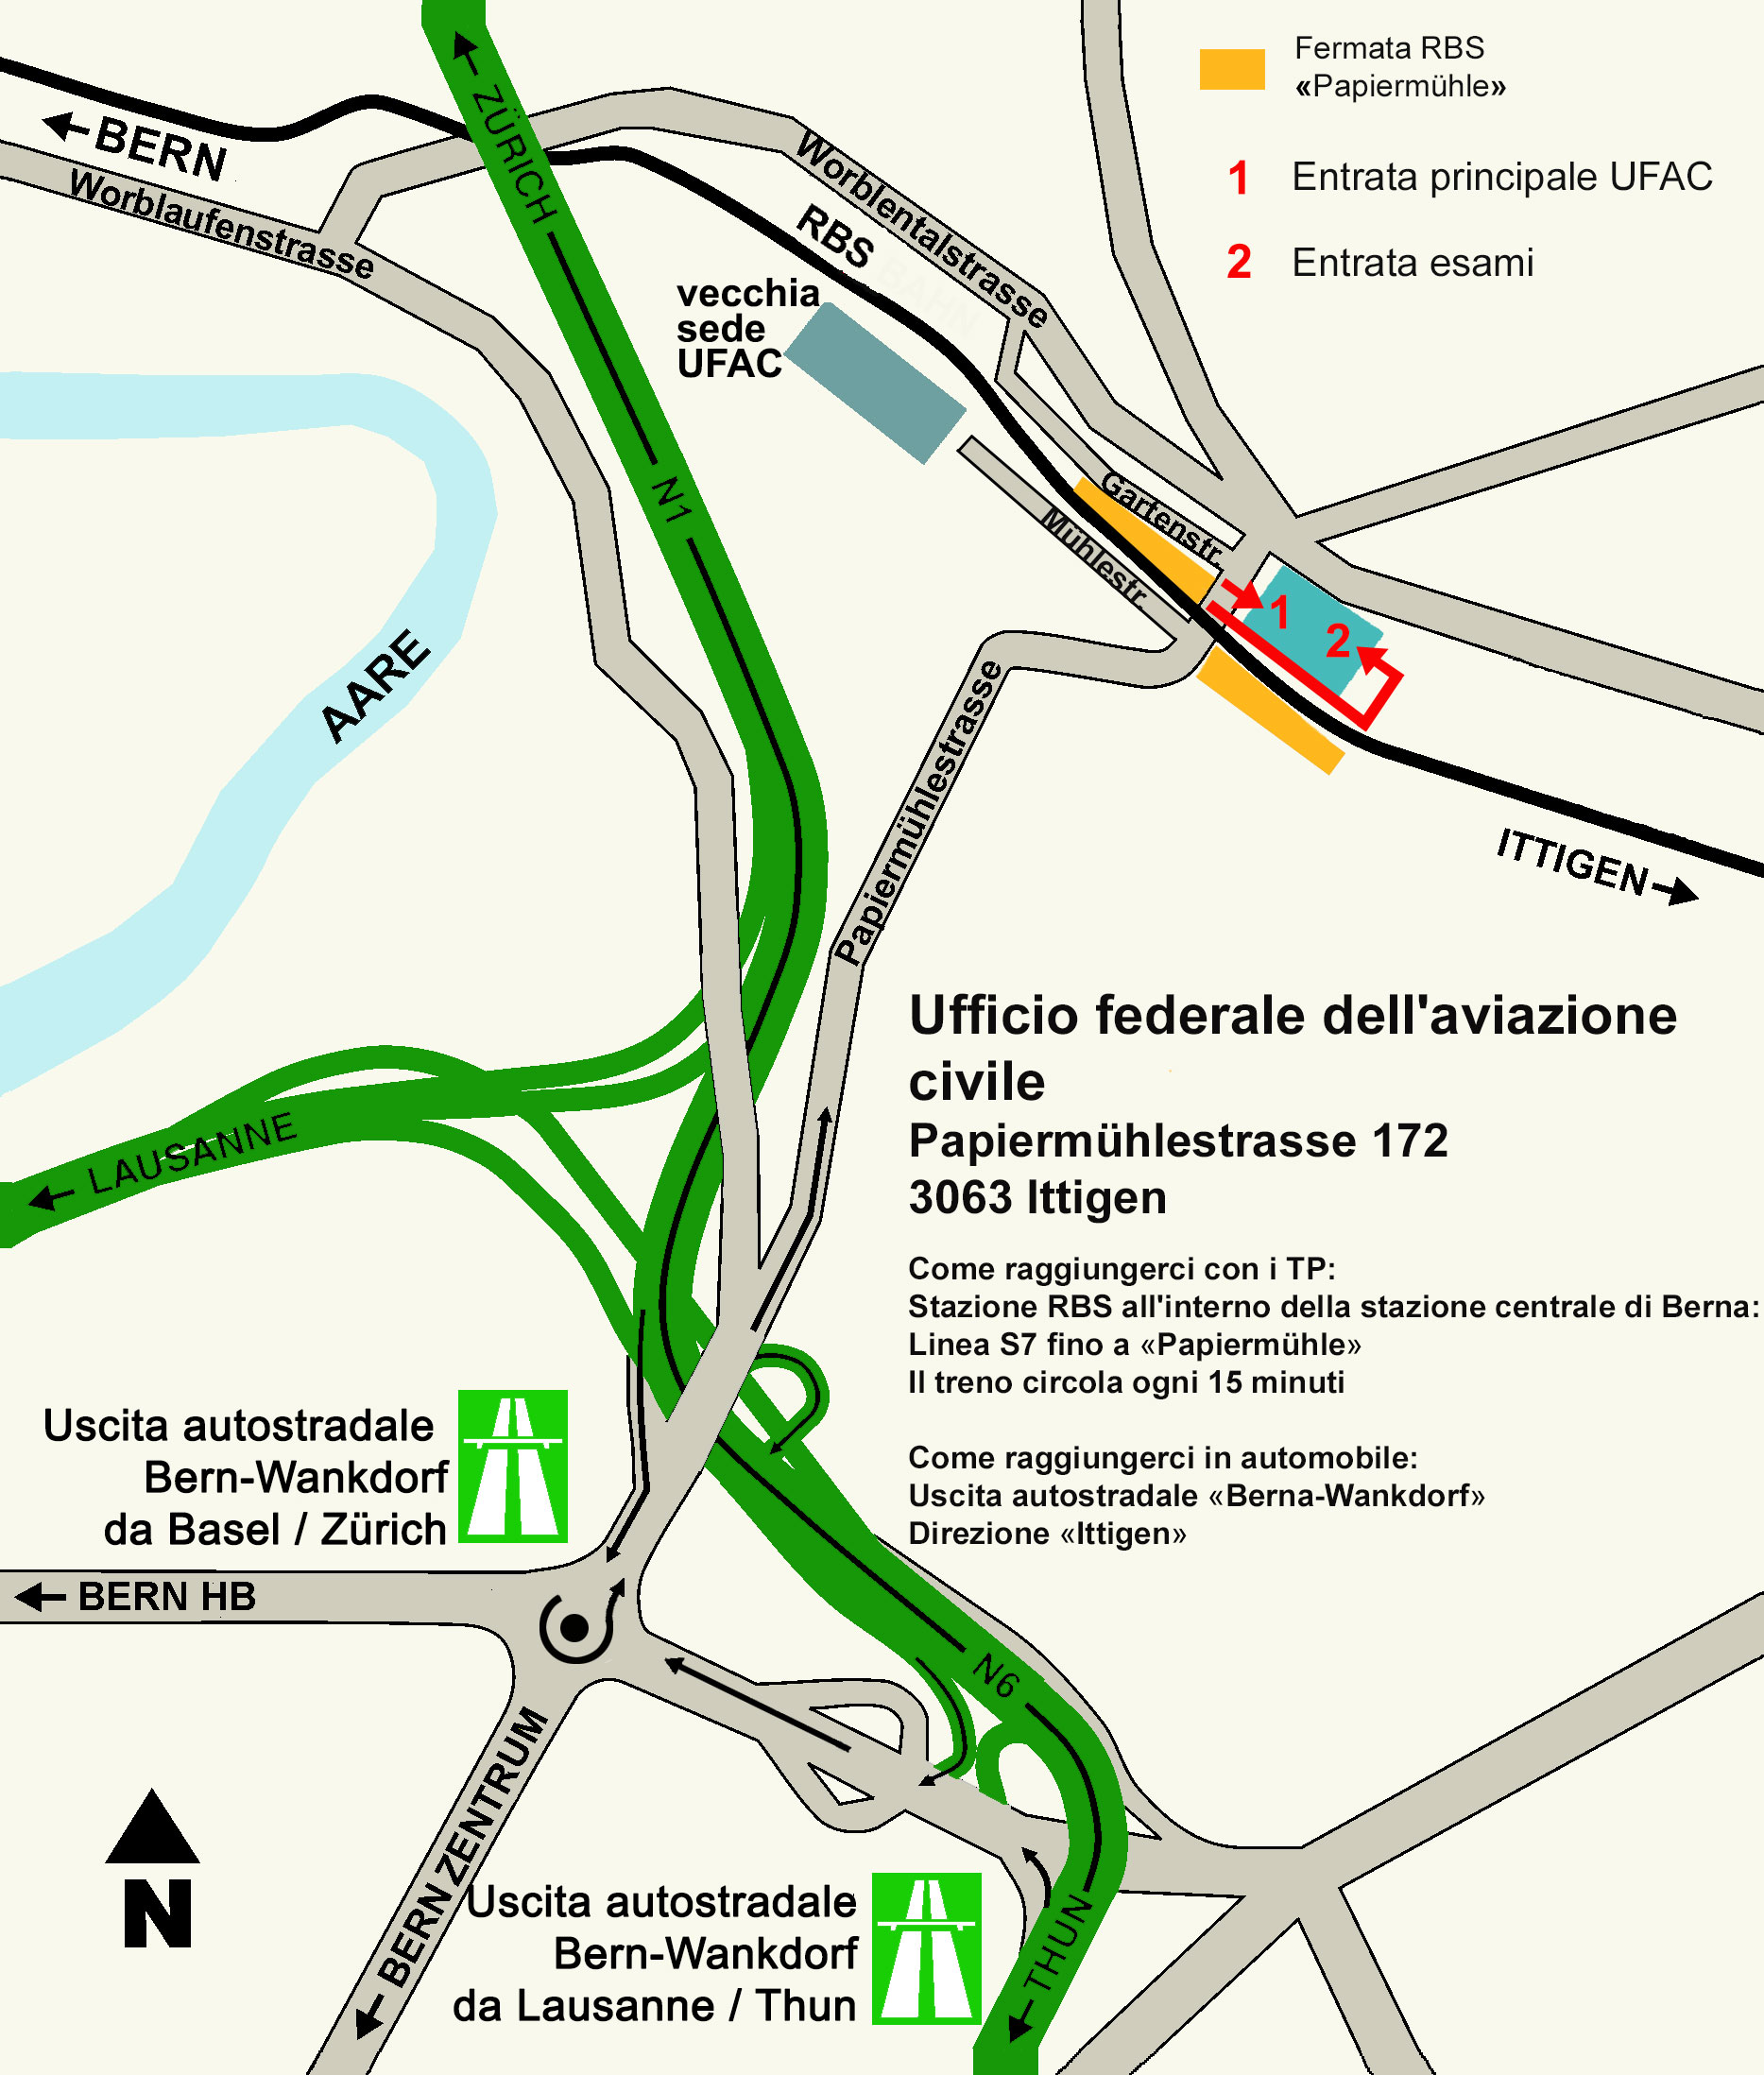 map of Mühlestrasse 2<br/><br/>(Possibilità di parcheggio : via Rain 7, Ittigen e centro commerciale Talgut Ittigen.)<br/><br>
		3063 Ittigen